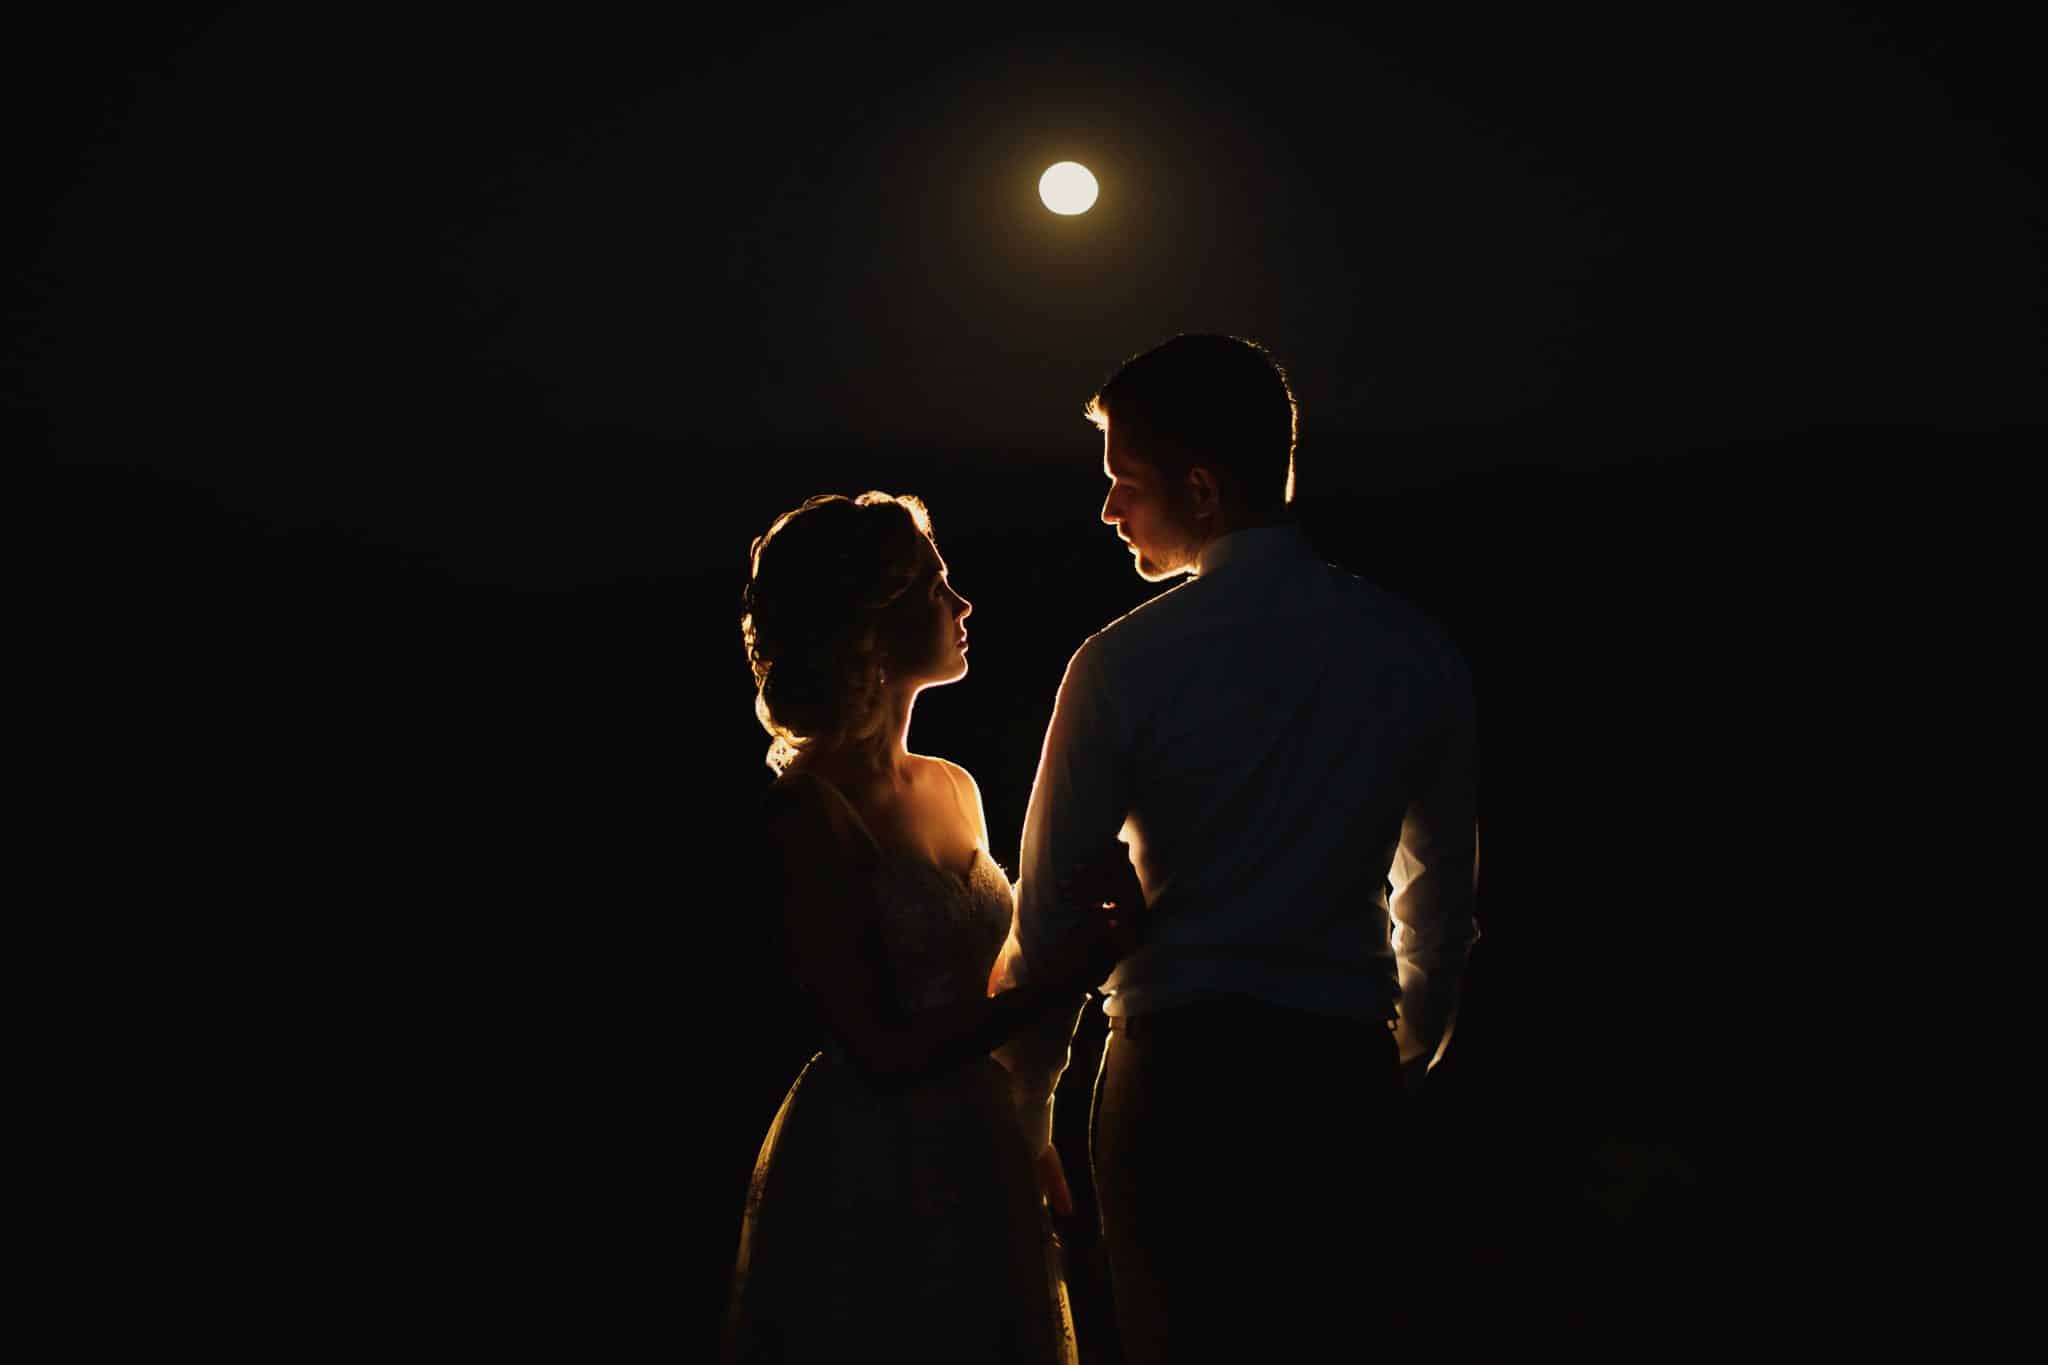 Par i måneskinn med forvetninger om kveldens erotiske opplevelse